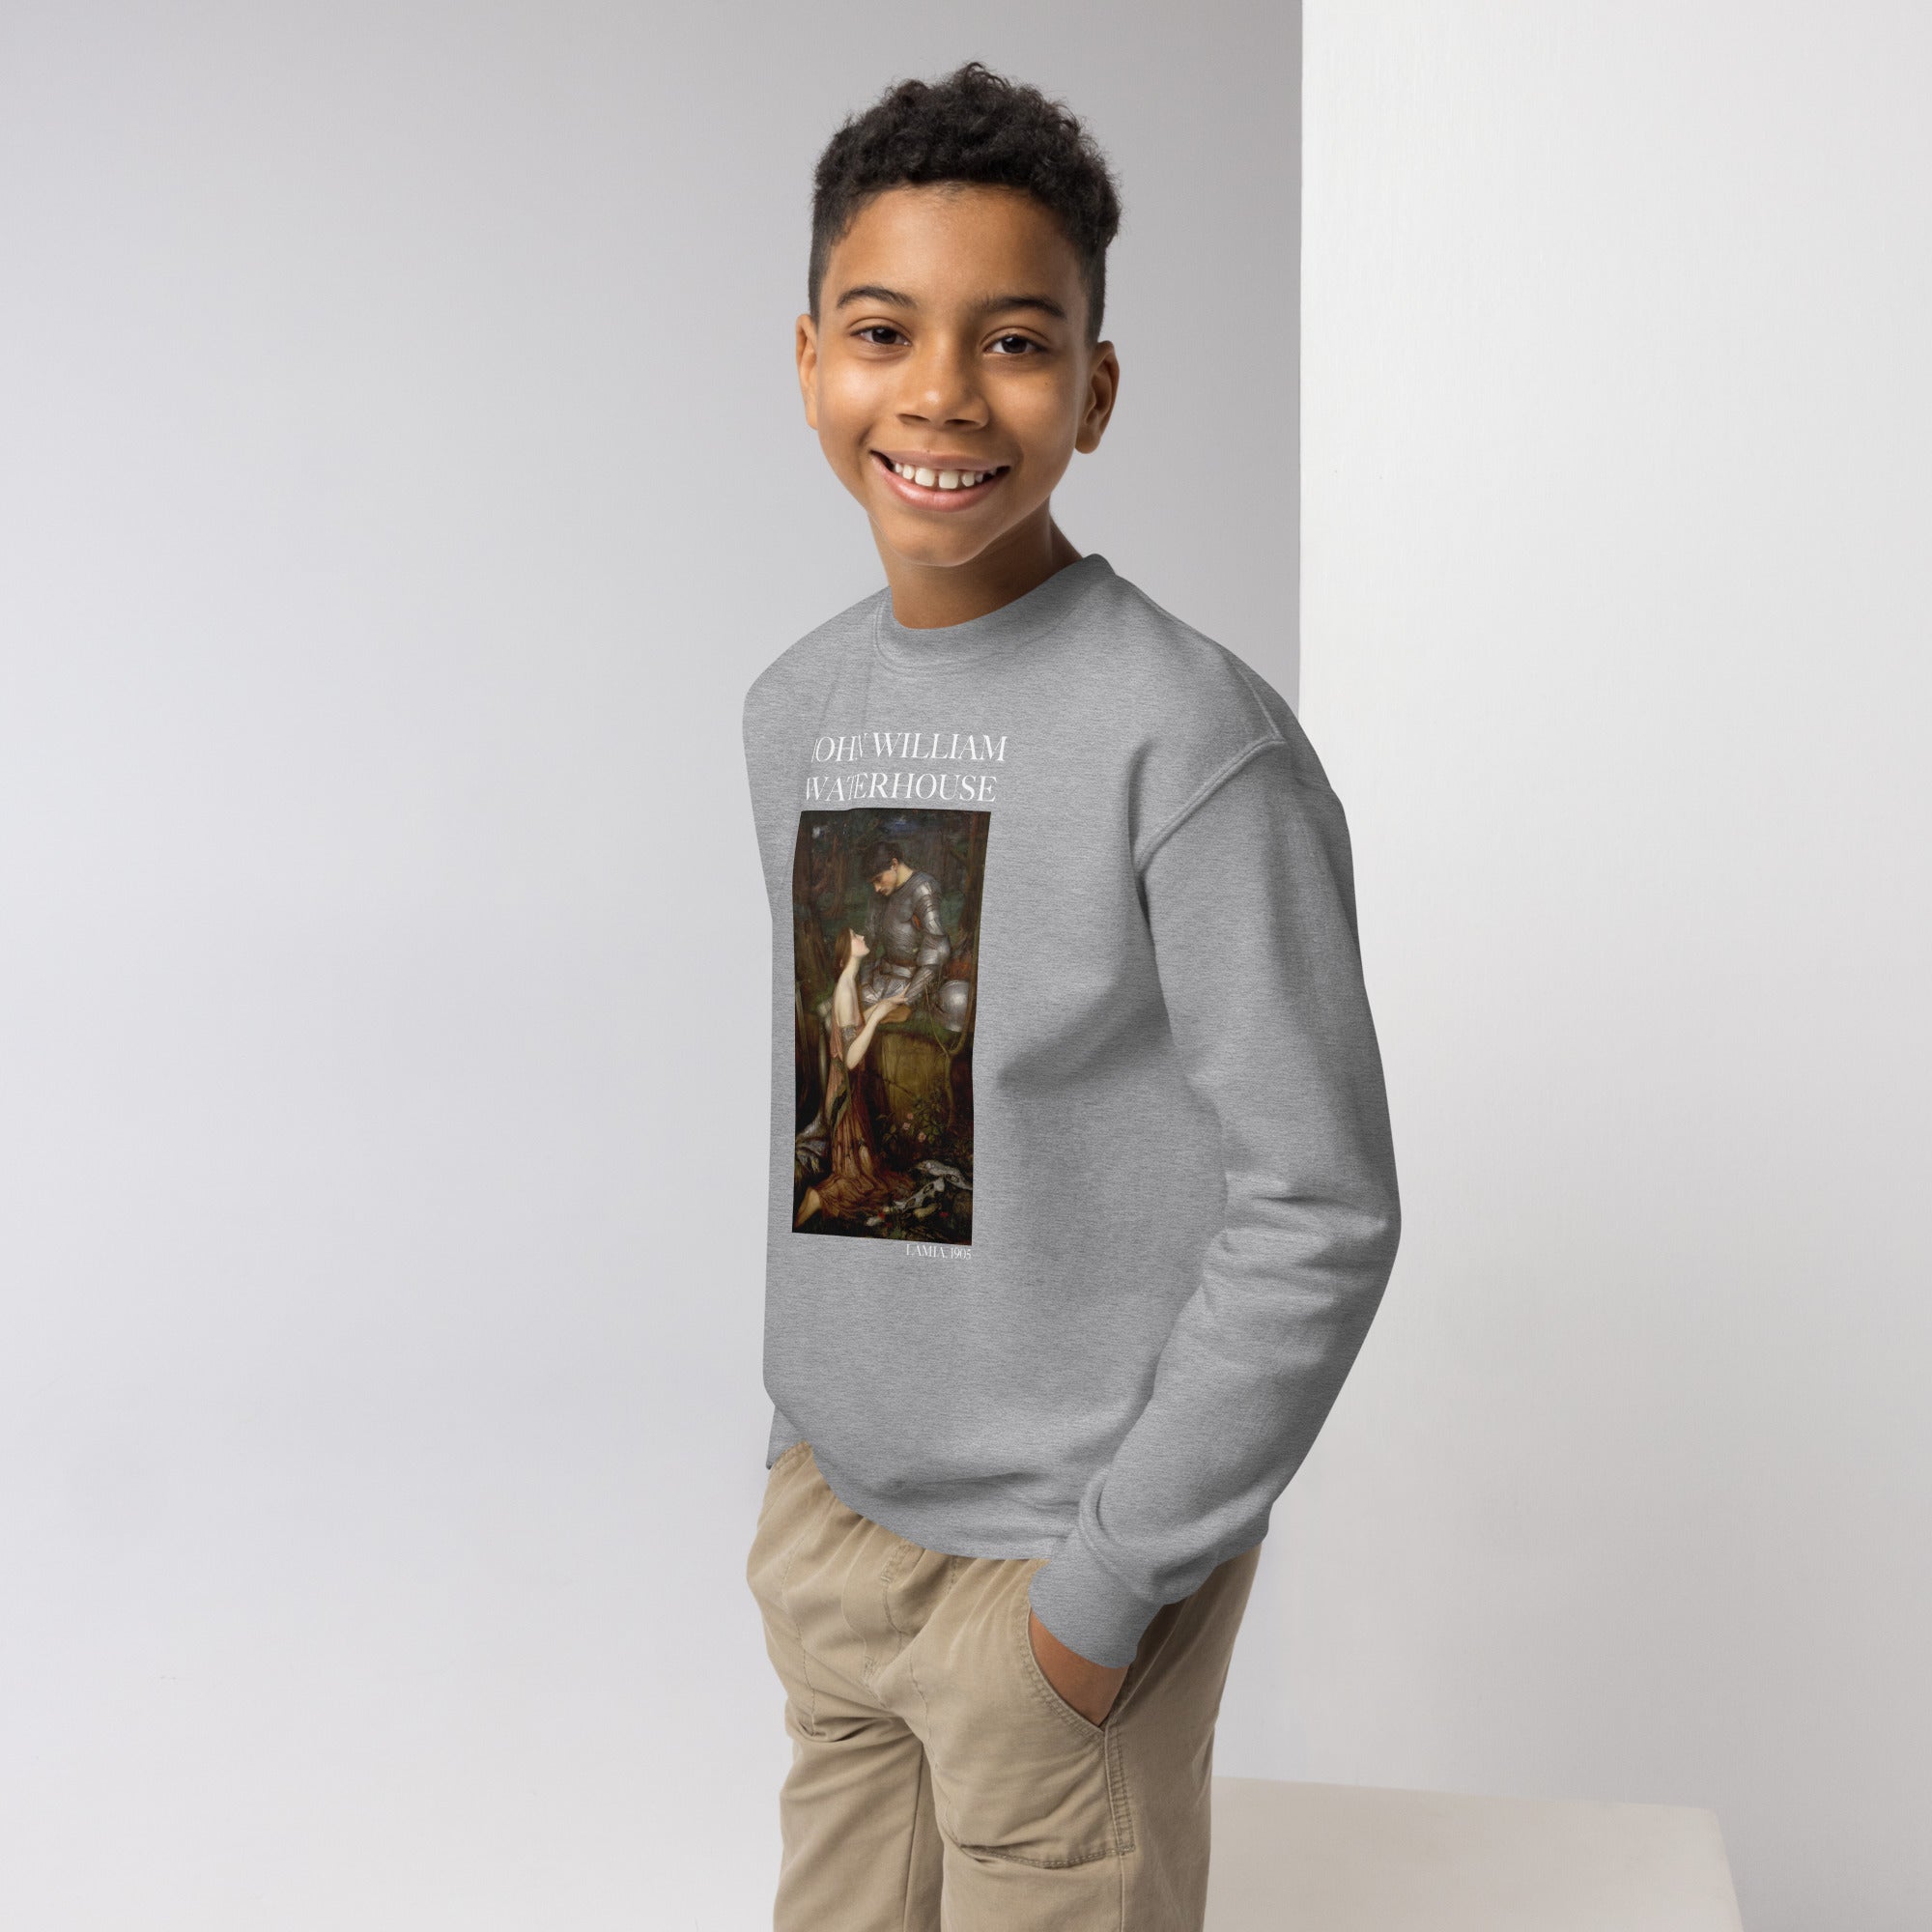 Rundhals-Sweatshirt „Lamia“ von John William Waterhouse, berühmtes Gemälde | Premium-Kunst-Sweatshirt für Jugendliche